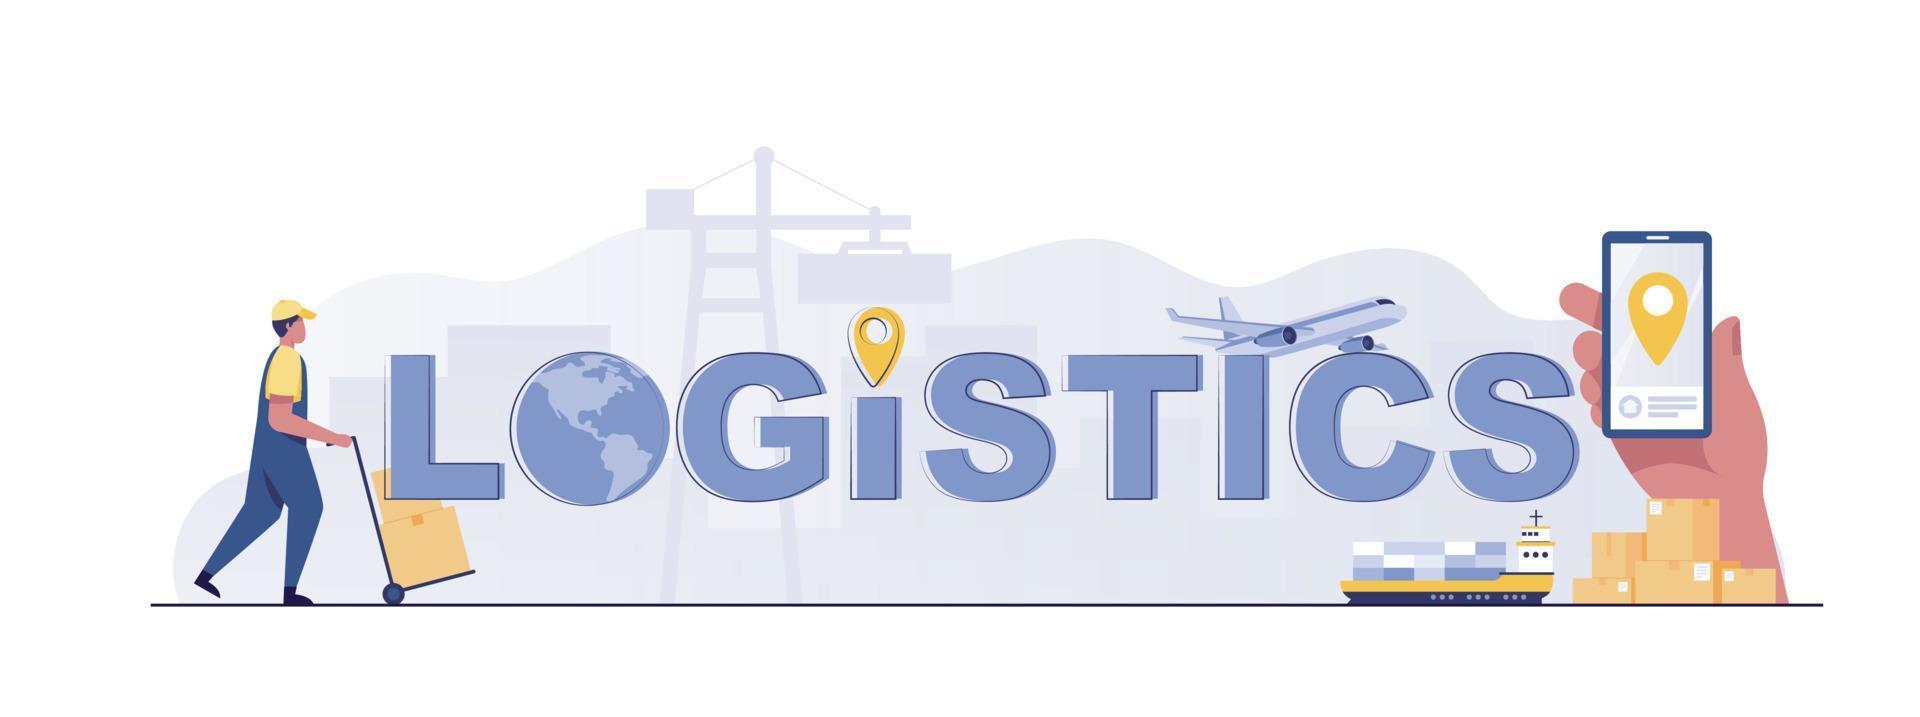 cabeçalho tipográfico de serviço de logística e entrega. ideia de transporte e distribuição. vetor